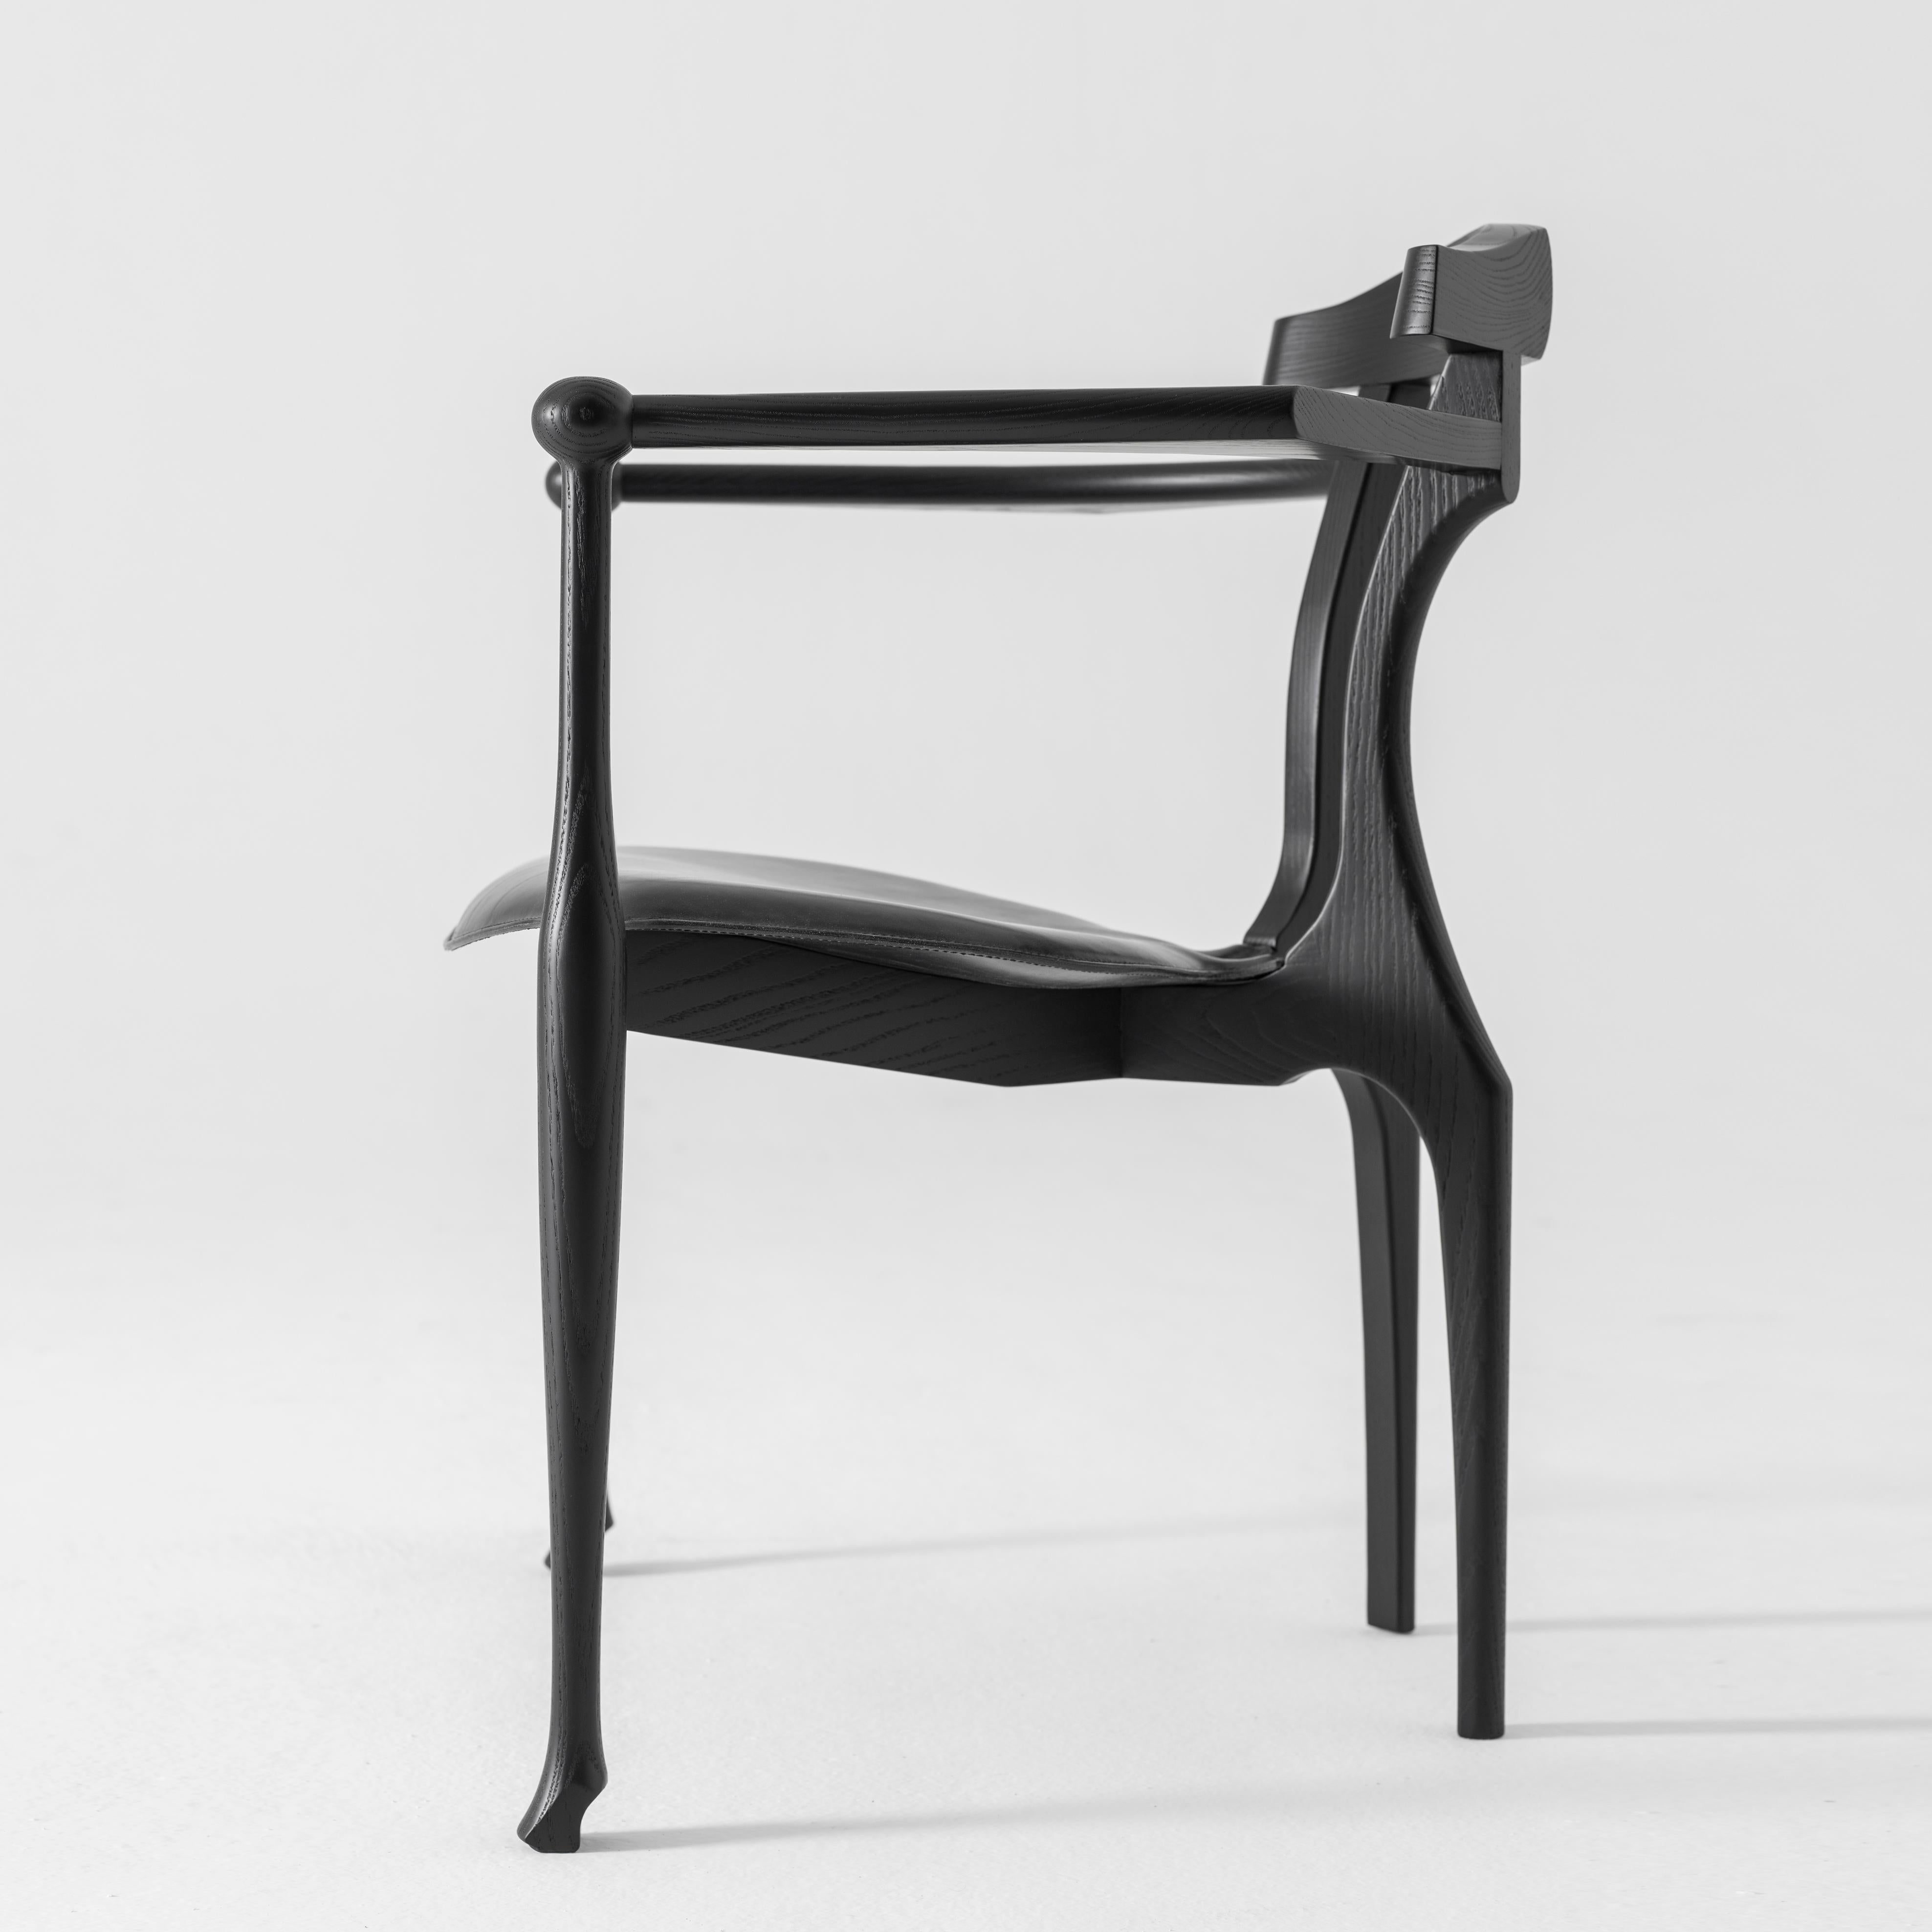 Fauteuil Gaulino conçu par Oscar Tusquets et fabriqué par BD Barcelona Design.

Frêne massif laqué noir avec assise en cuir noir.


La chaise Gaulino qui, conçue en 1987, a été sélectionnée pour le prix de design industriel et Adi-Fad en 1989 et à